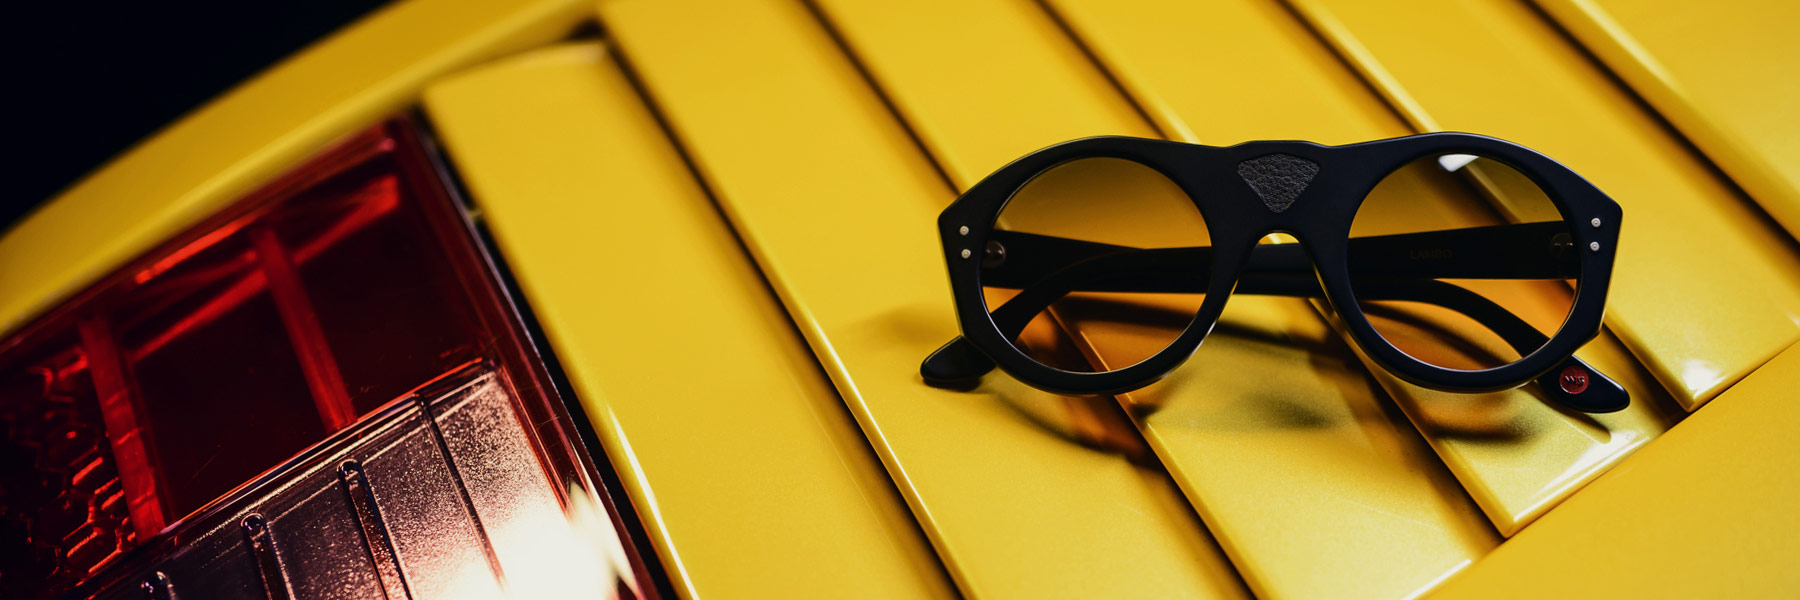 Wilde-Sunglasses-Occhiali-Lambo-driver-Collection-Collezione-2015-2016-Barcelona_Sunglasses_design_by_rob_adalierd3.jpg